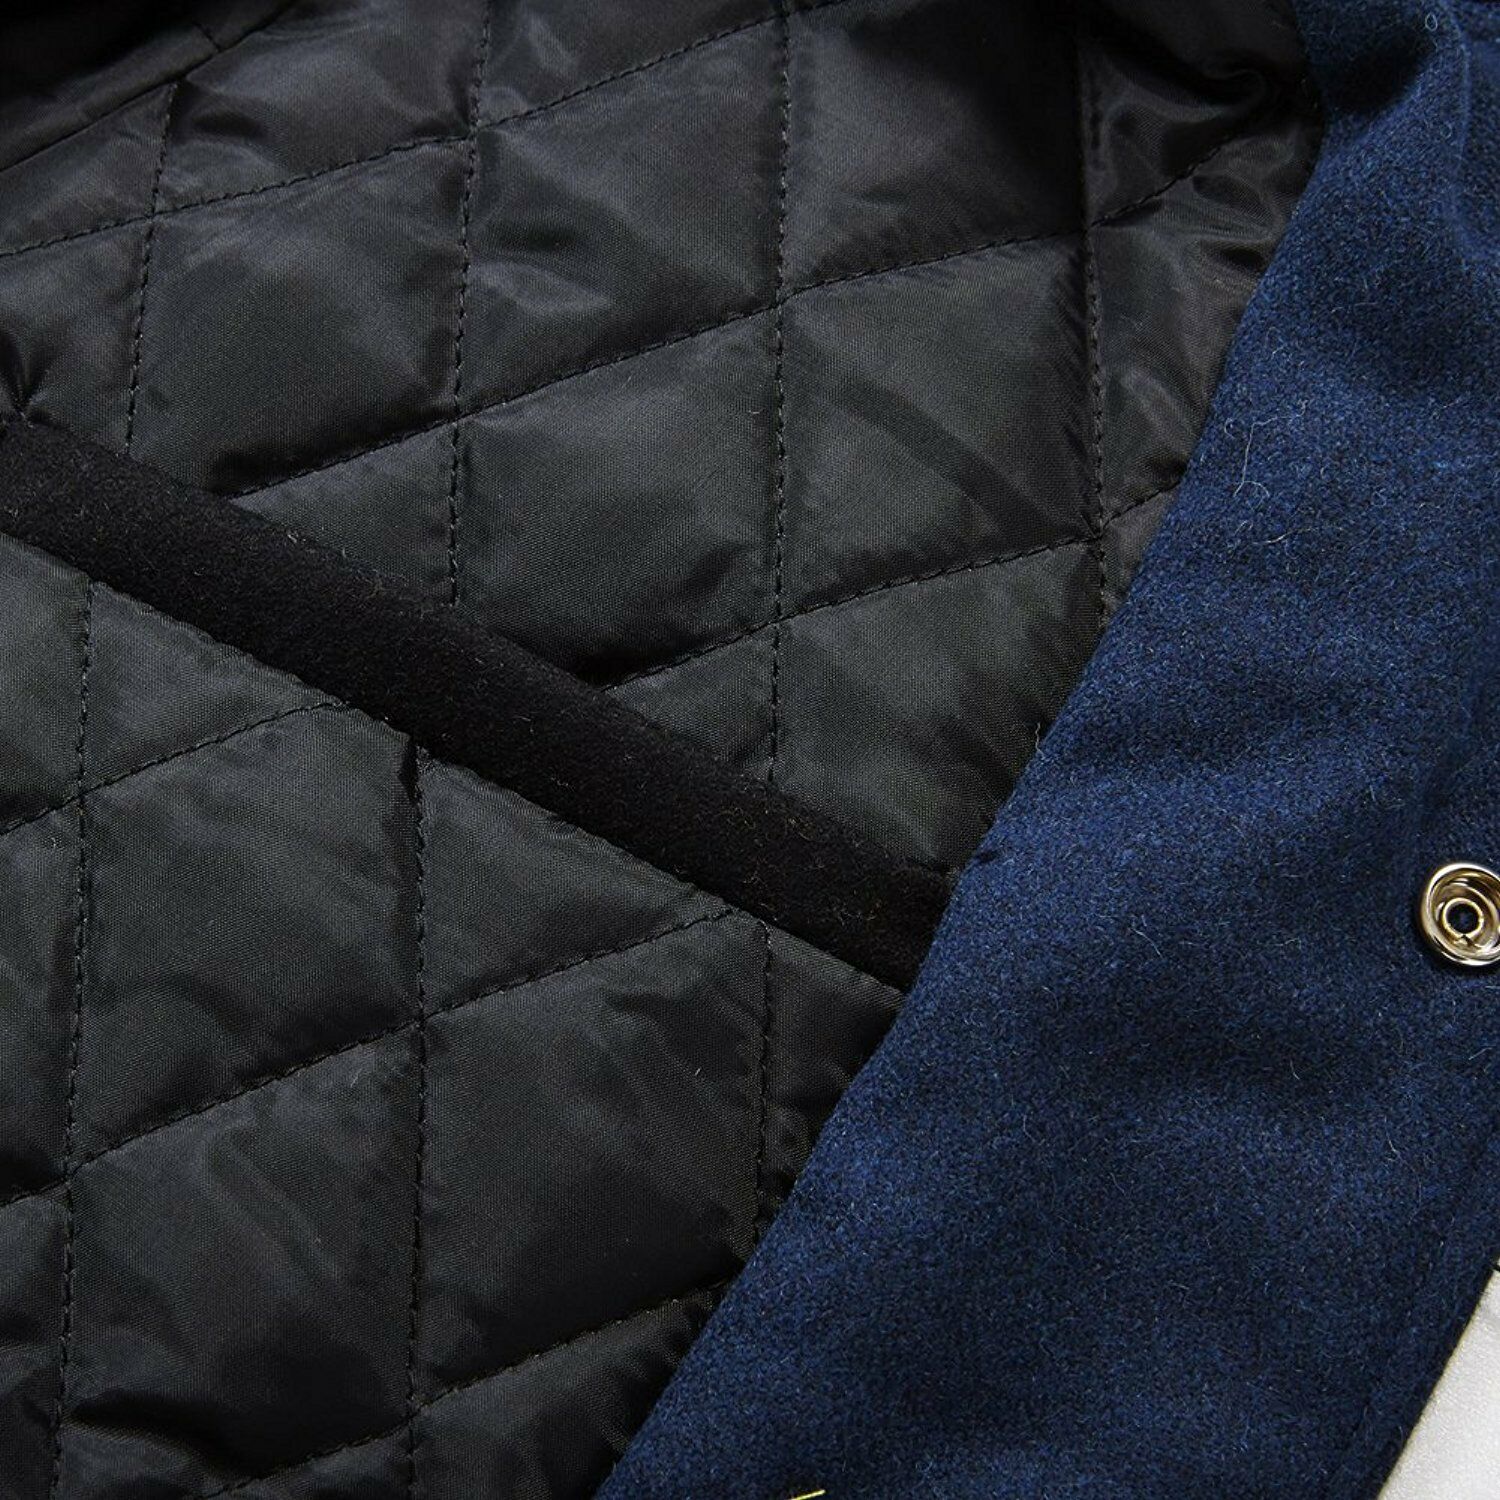 Spine Spark Navy Blue Wool Varsity Jacket Brown Leather Sleeves